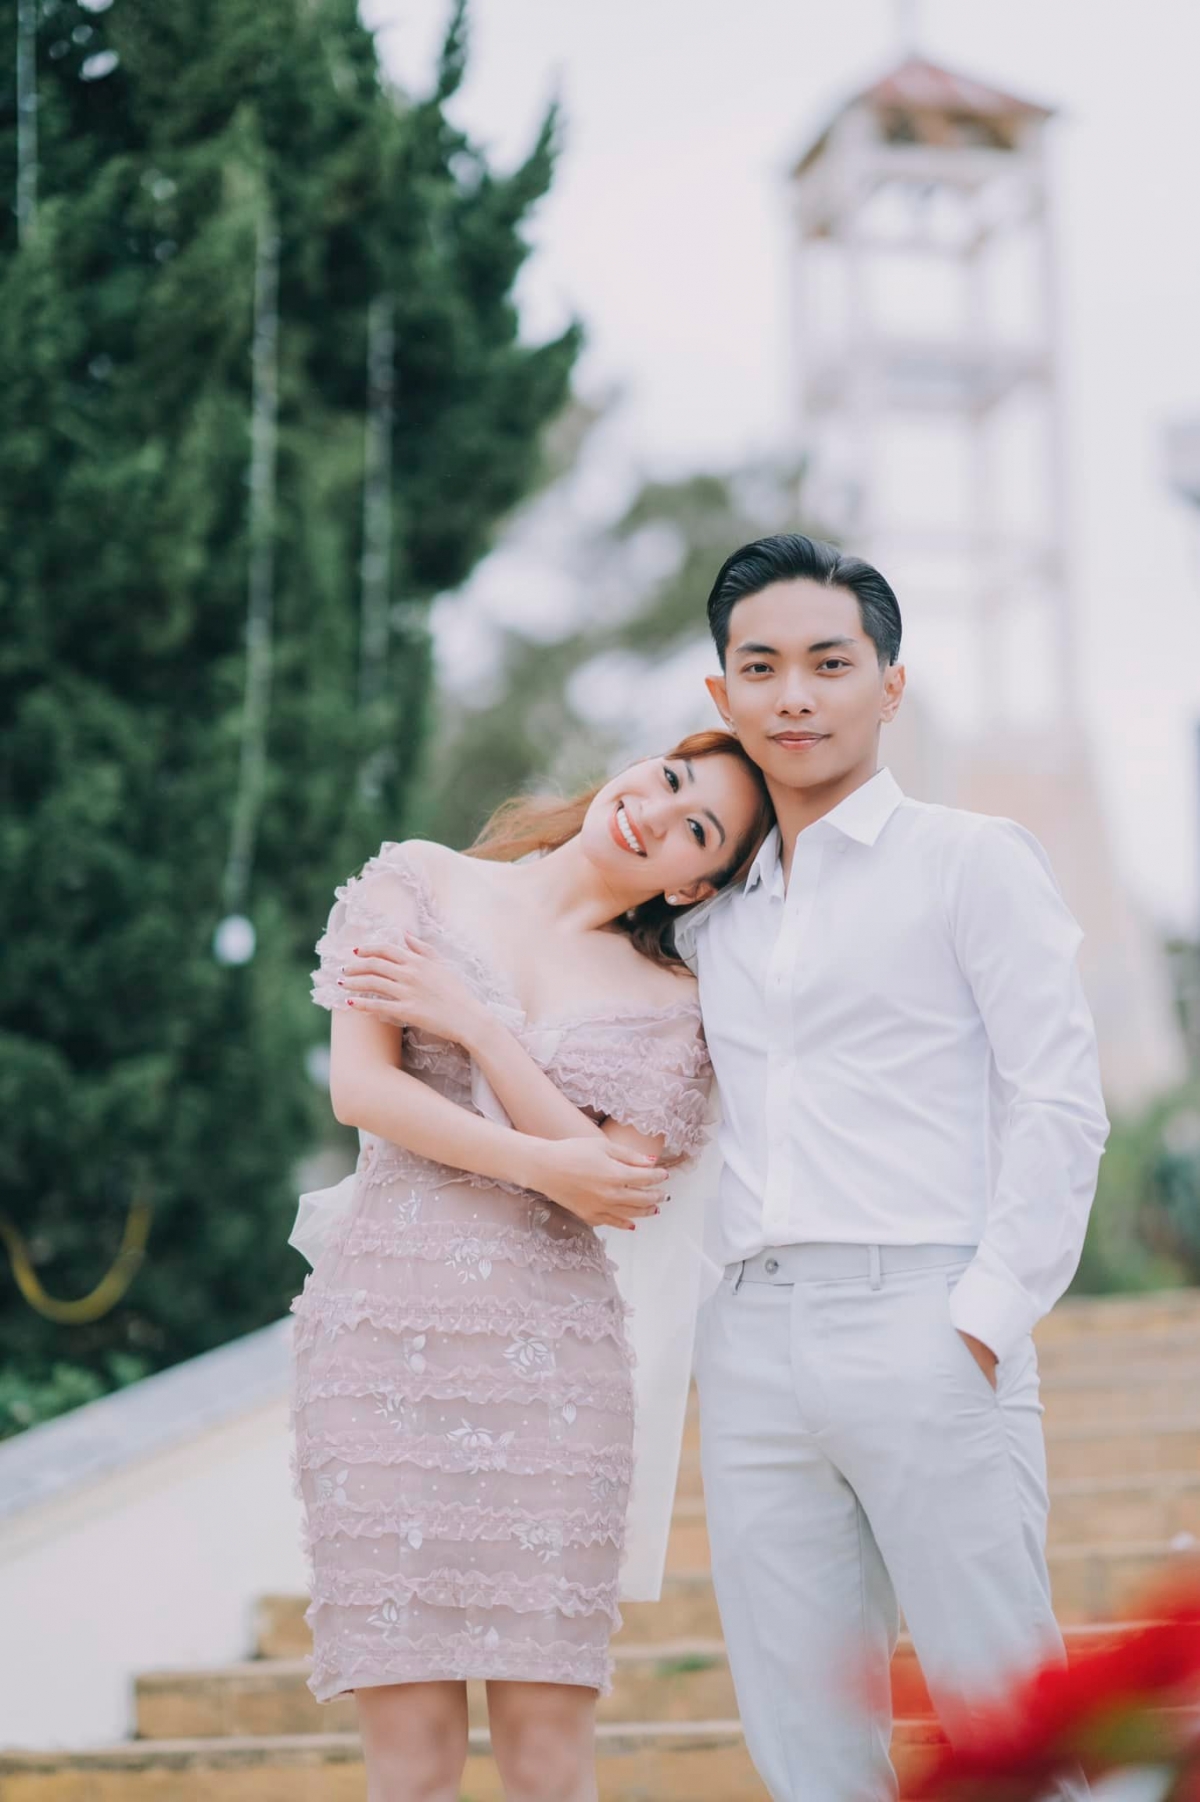 Phan Hiển muốn tổ chức một đám cưới hoàn hảo nhất với Khánh Thi - Ảnh 4.